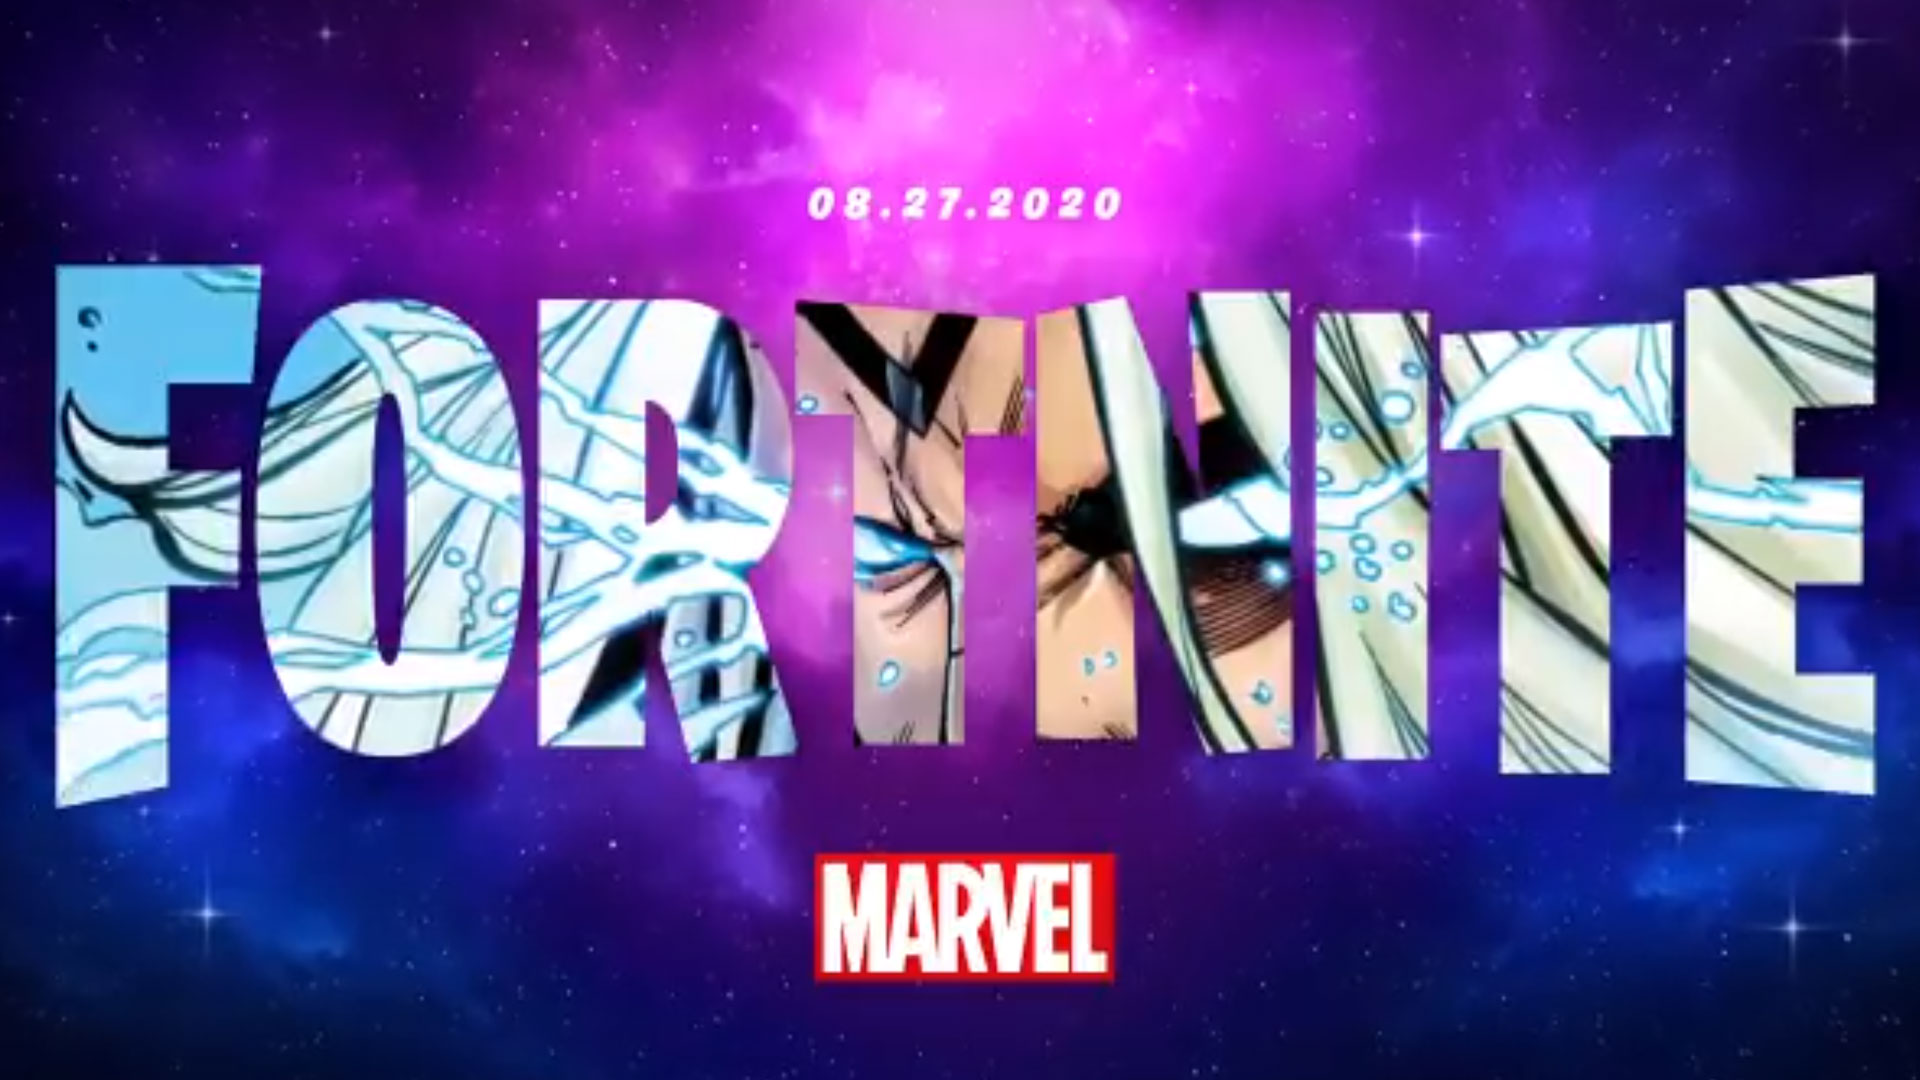 Fortnite Chapter 2 Season 4 Marvel theme and Thor skin teased in new promo art | GamesRadar+